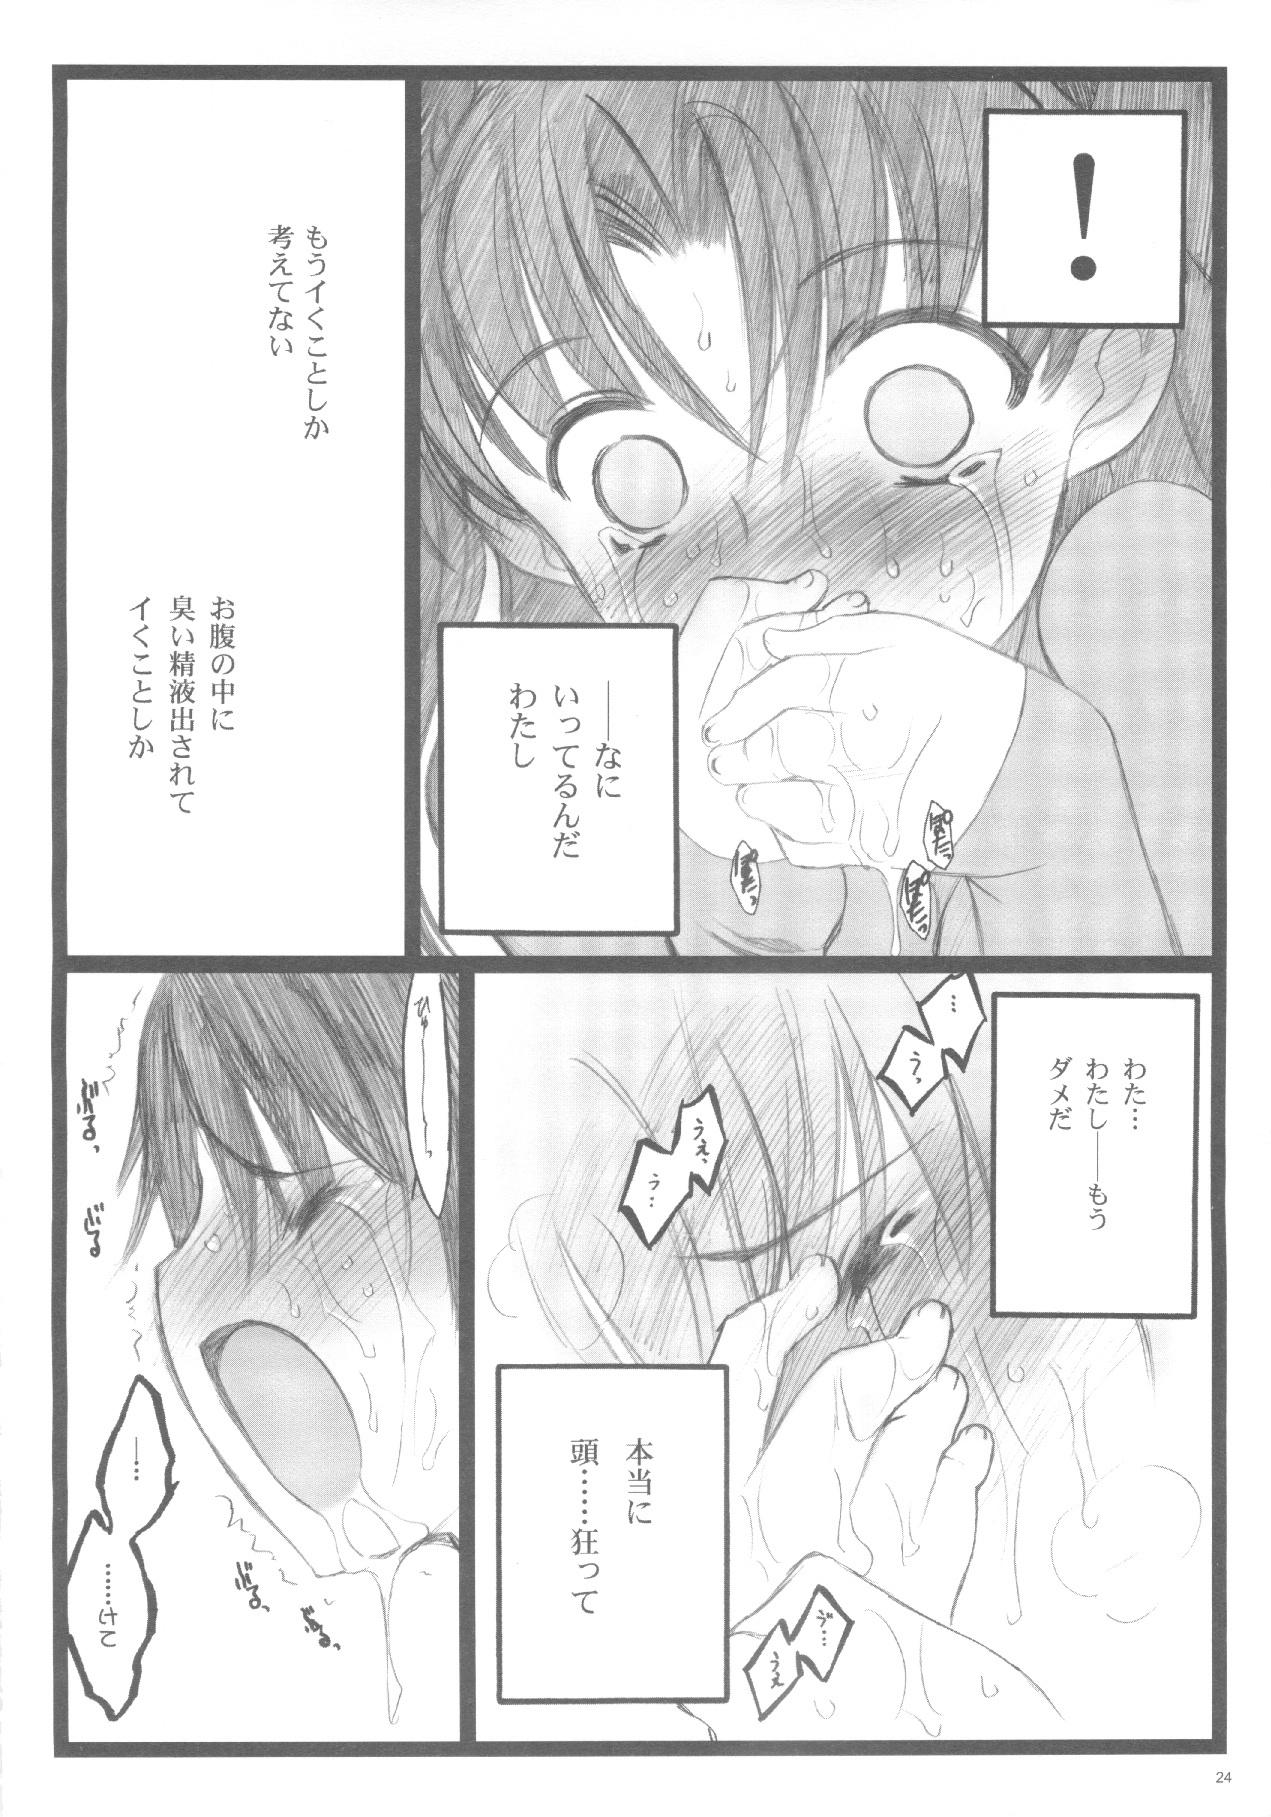 (C71) [Keumaya (Inoue Junichi)] Walpurugisnacht 3 / Walpurgis no Yoru 3 (Fate/stay night) page 23 full